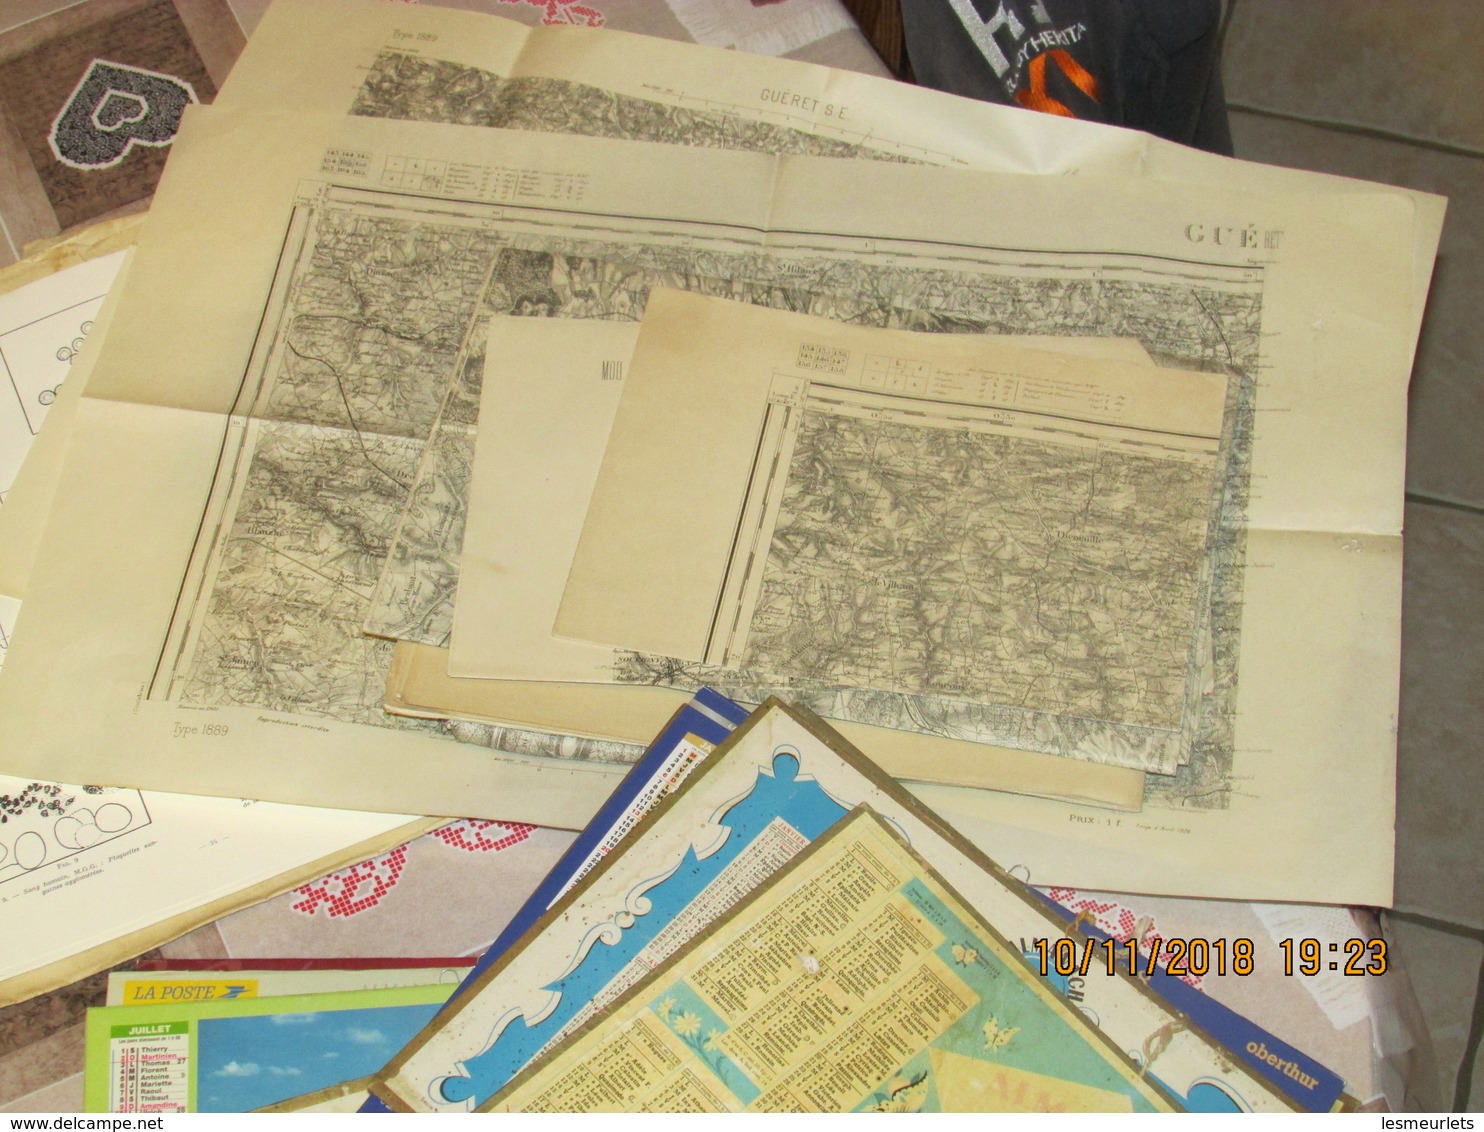 Gros lot vieux papiers environ 15 kg CPA CPM revues journaux calendriers  cartes geographiques...destockage à saisir